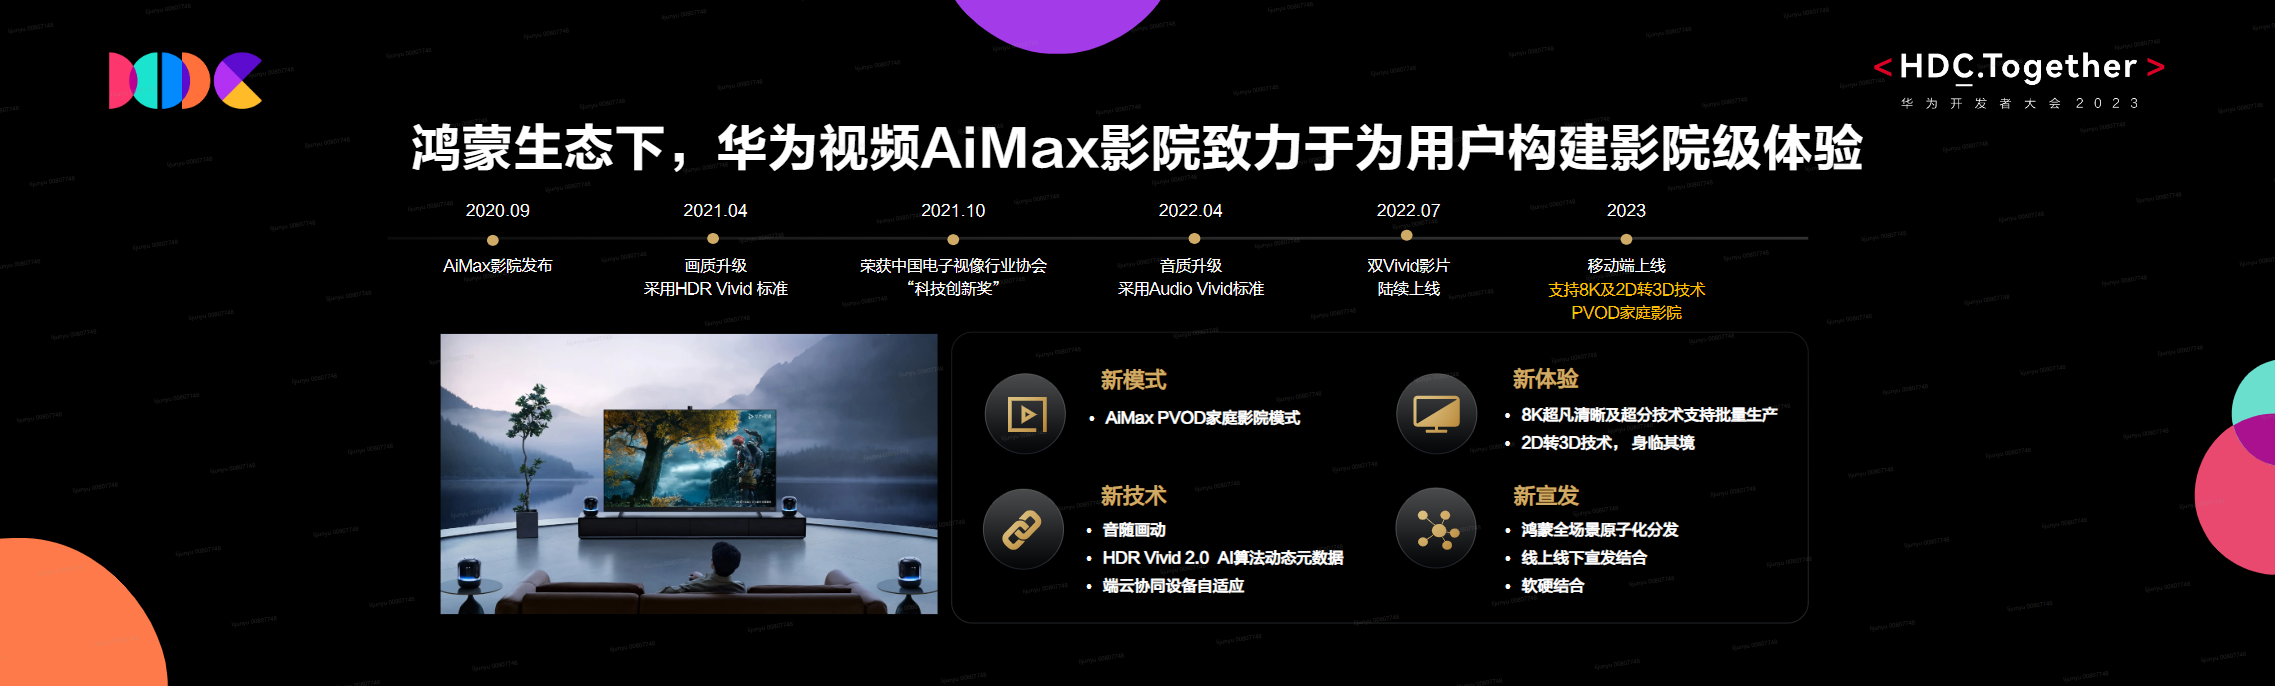 华为视频探索AiMax影院PVOD模式 助力电影行业繁荣-确认版8.12_配图_1.png